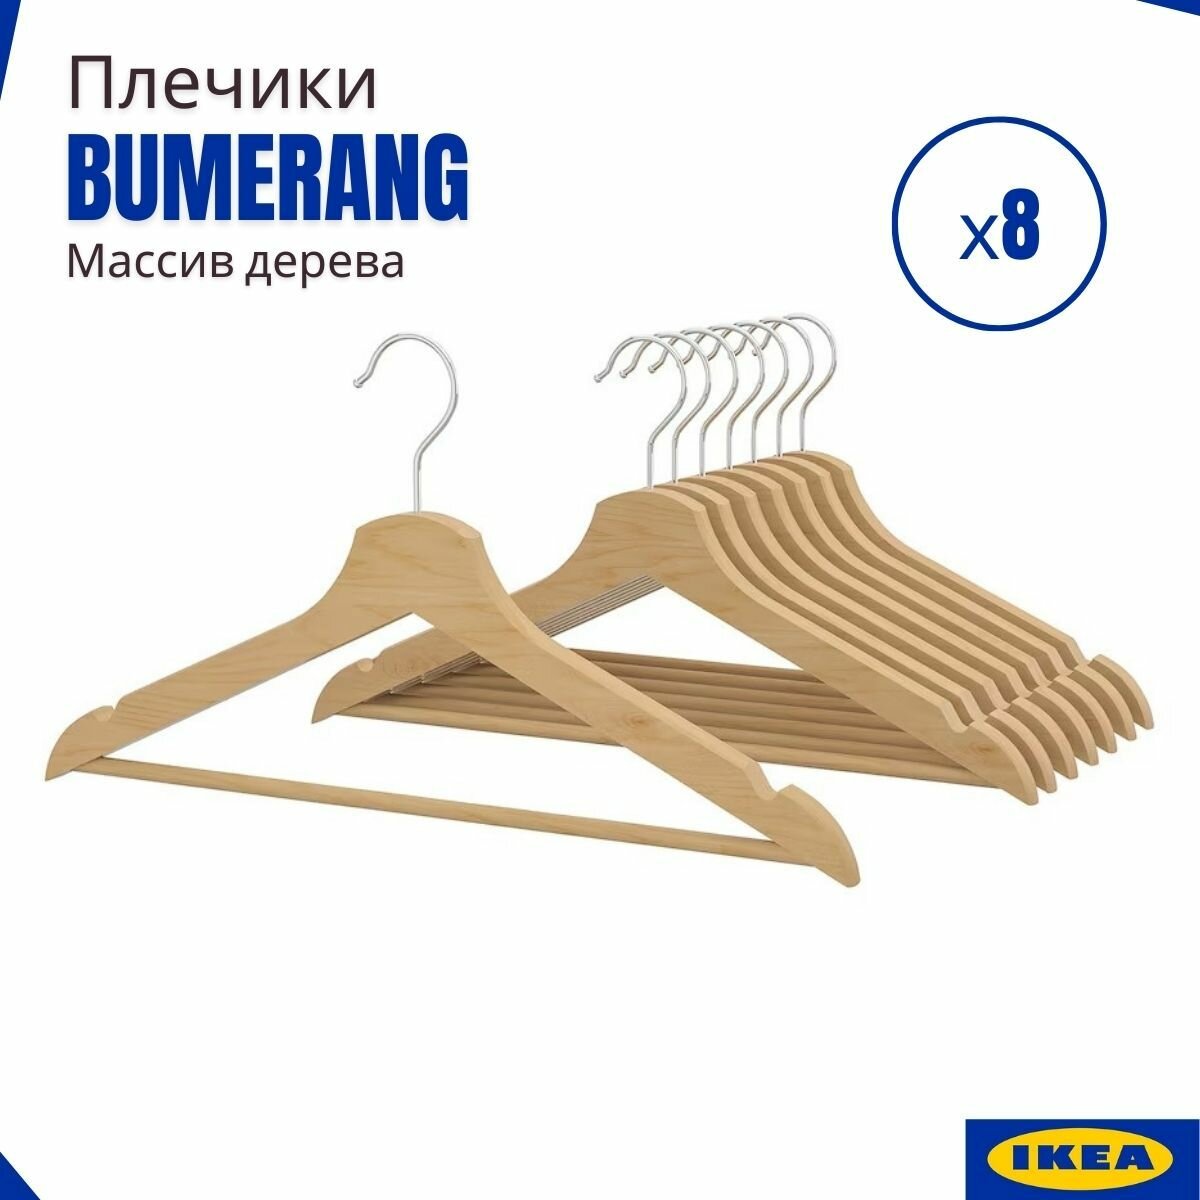 Плечики икеа Бумеранг, натуральный цвет, набор вешалок для одежды. Деревянные вешалки IKEA BUMERANG, 8 шт